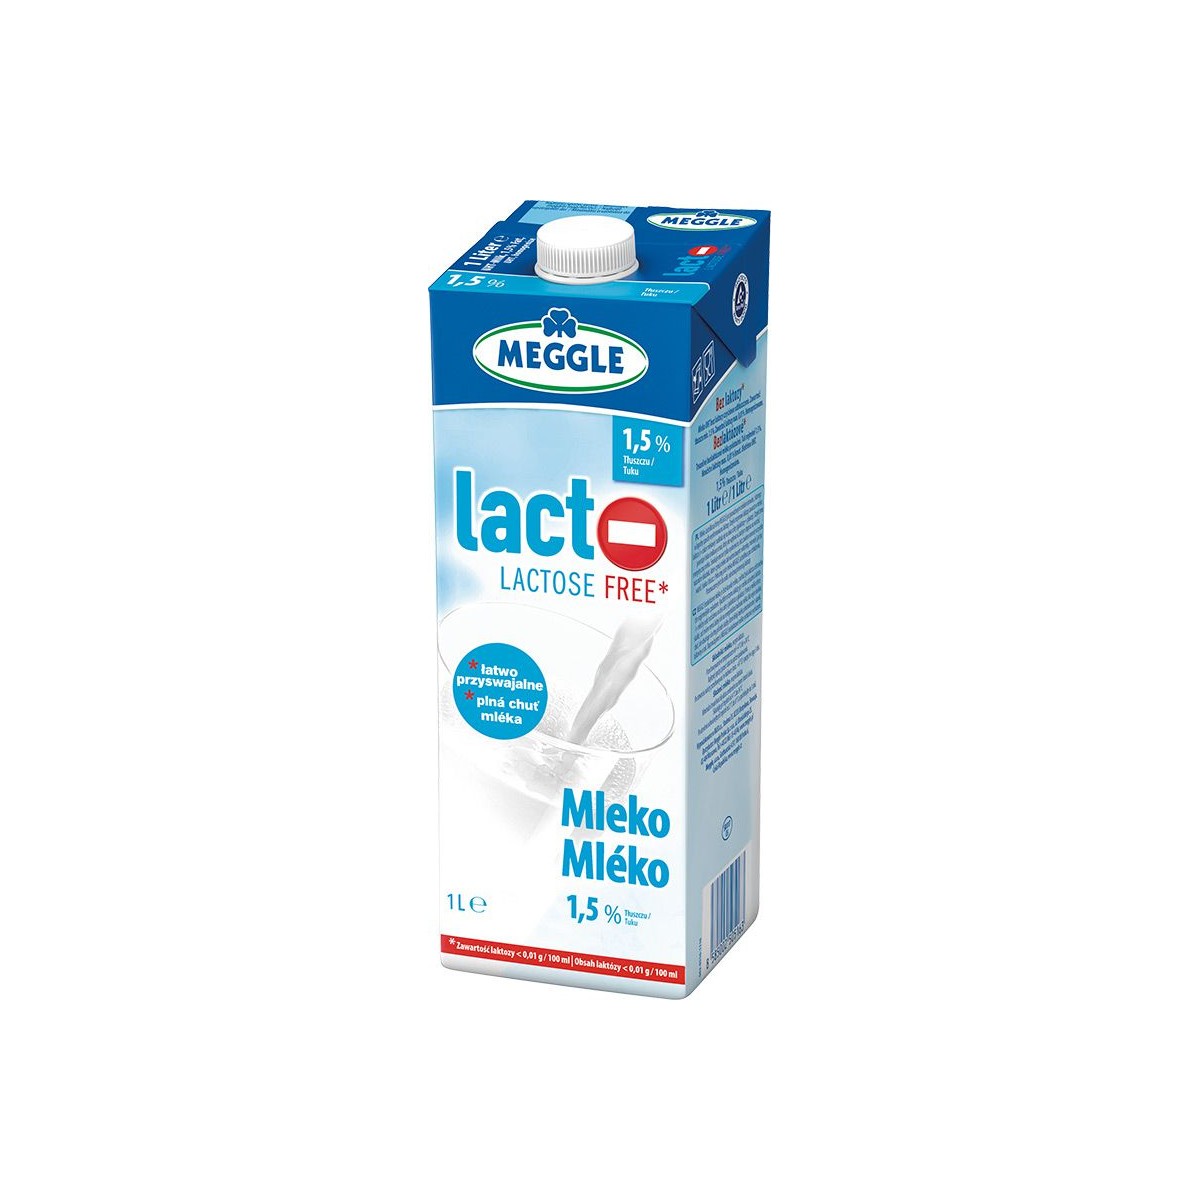 Meggle polotučné mléko bezlaktózové 1l - 1,5%